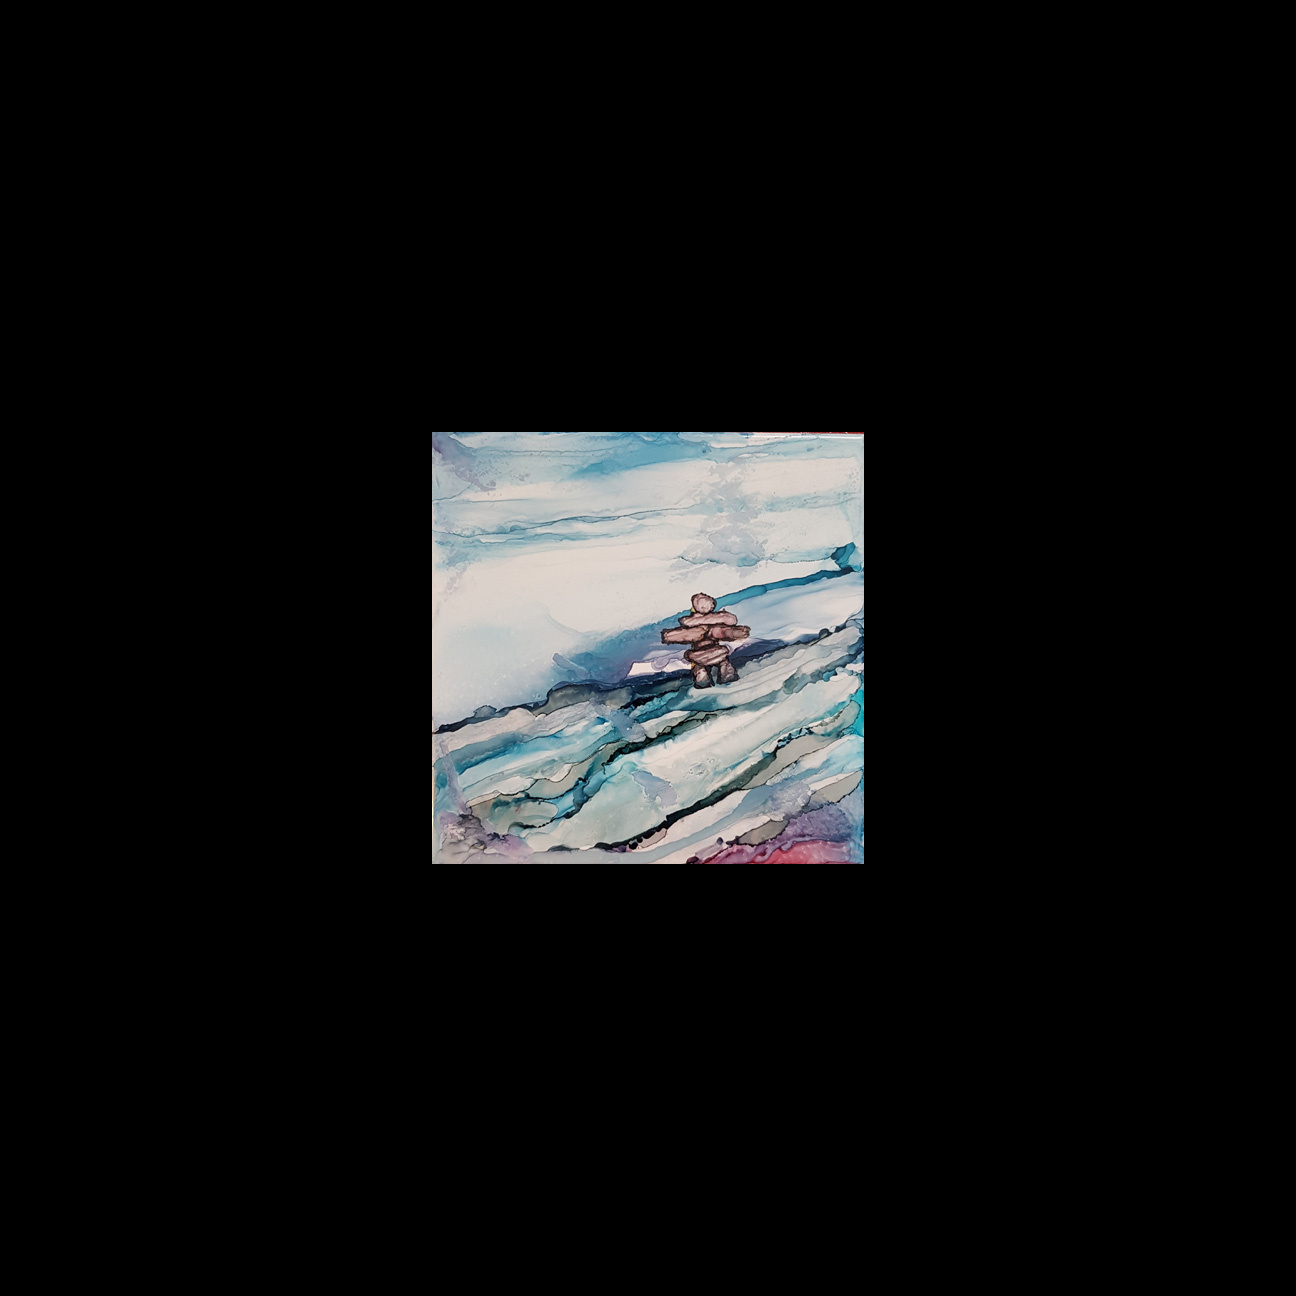 2019-06 "Northern Canadian Inukshuk"
Image: 6" x 6"
Framed: 7.75" x 7.75"
Alcohol Ink on Ceramic Tile
$100.00